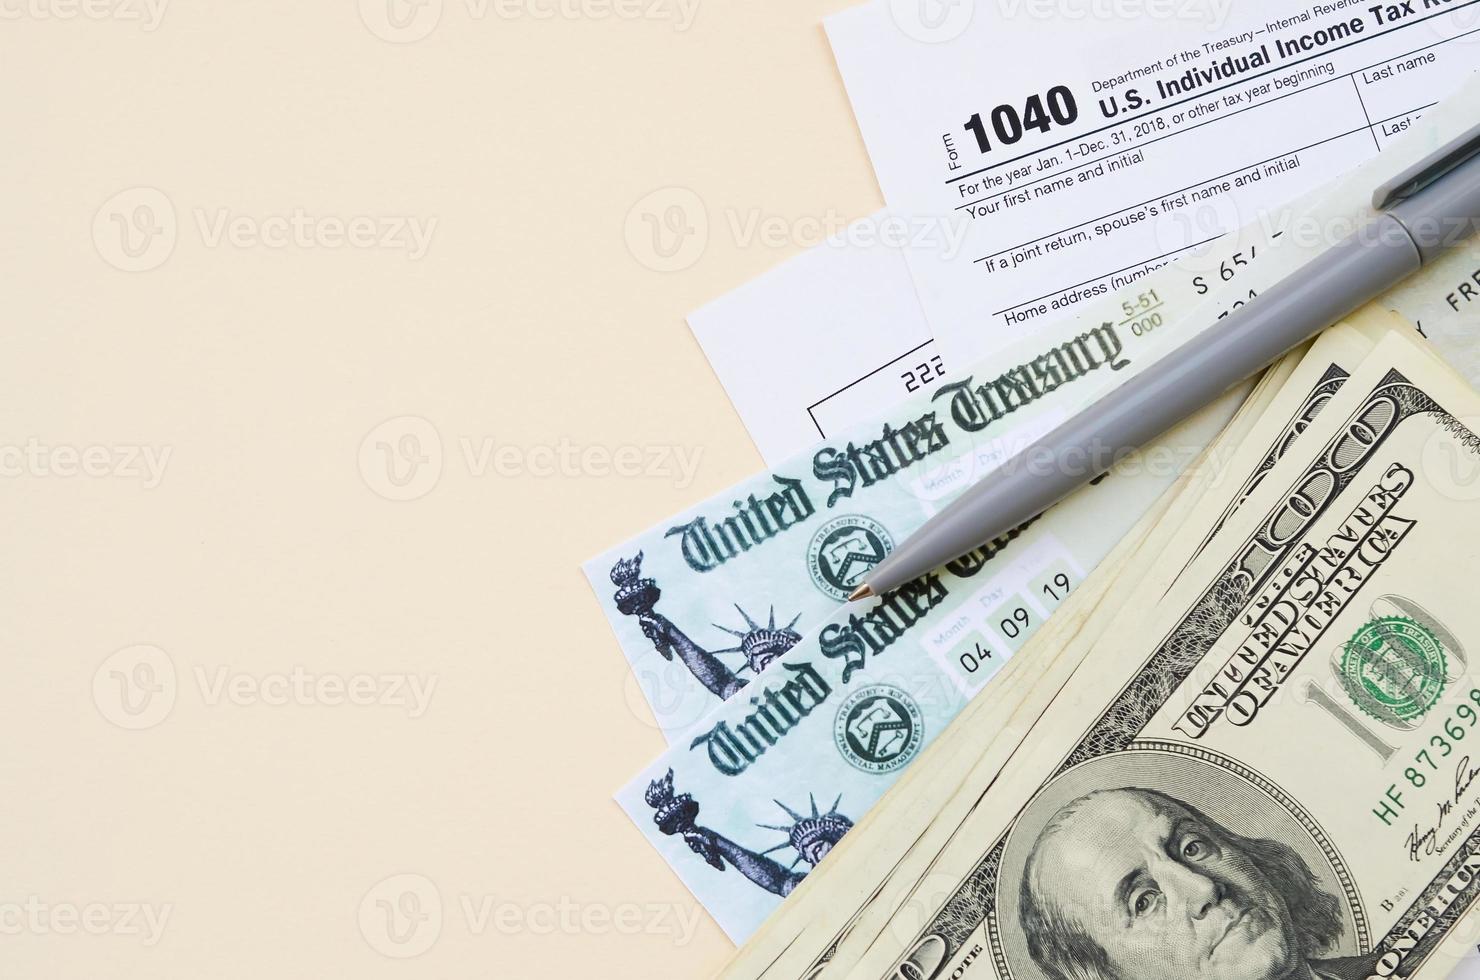 1040 enskild inkomst beskatta lämna tillbaka form med återbetalning kolla upp och hundra dollar räkningar på beige bakgrund foto